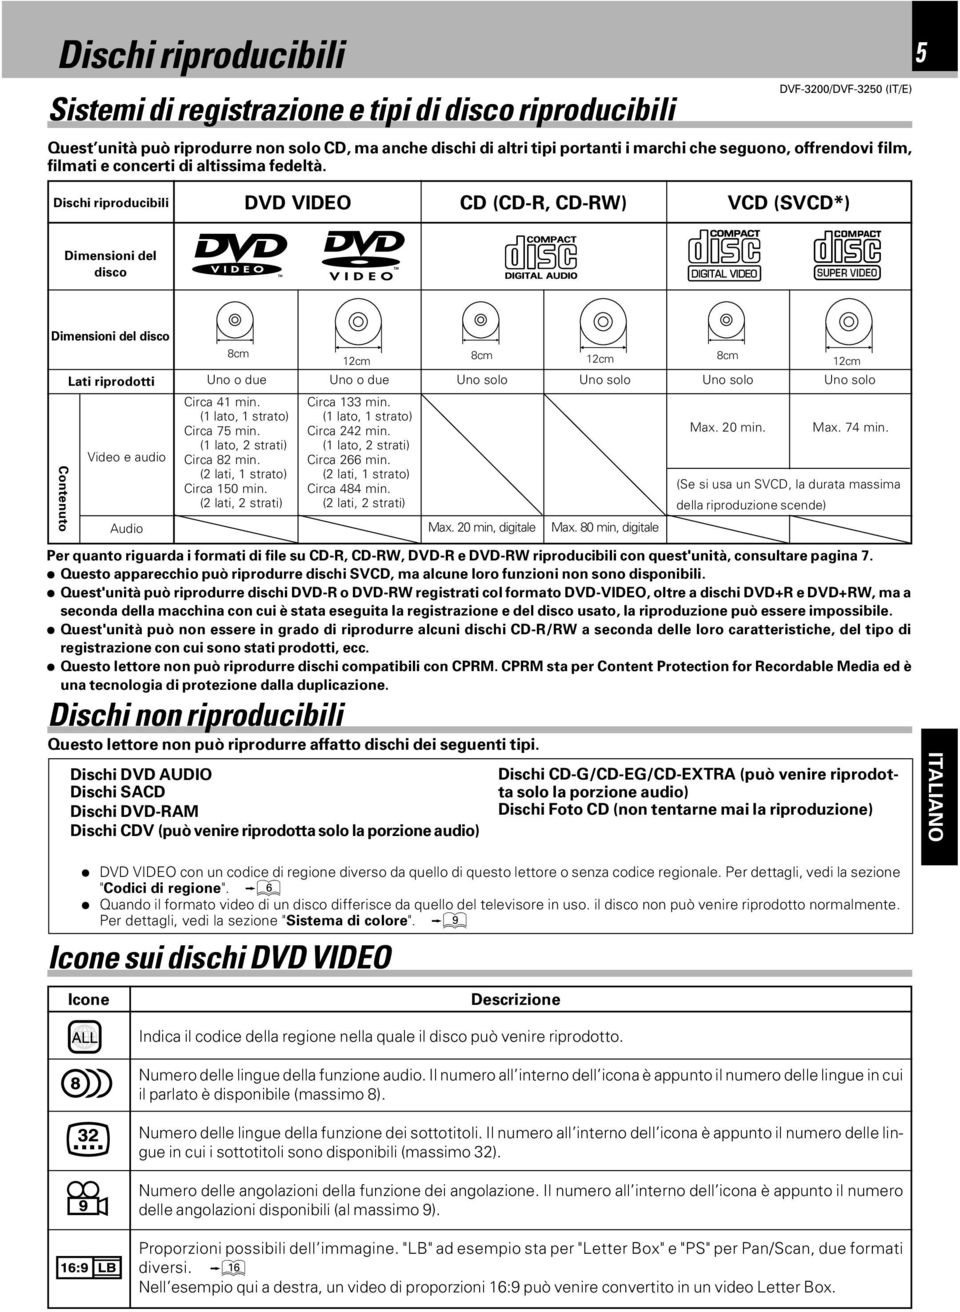 5 Dischi riproducibili DVD VIDEO CD (CD-R, CD-RW) VCD (SVCD*) Dimensioni del disco Dimensioni del disco Lati riprodotti Video e audio Audio 8cm Uno o due Circa 41 min. (1 lato, 1 strato) Circa 75 min.